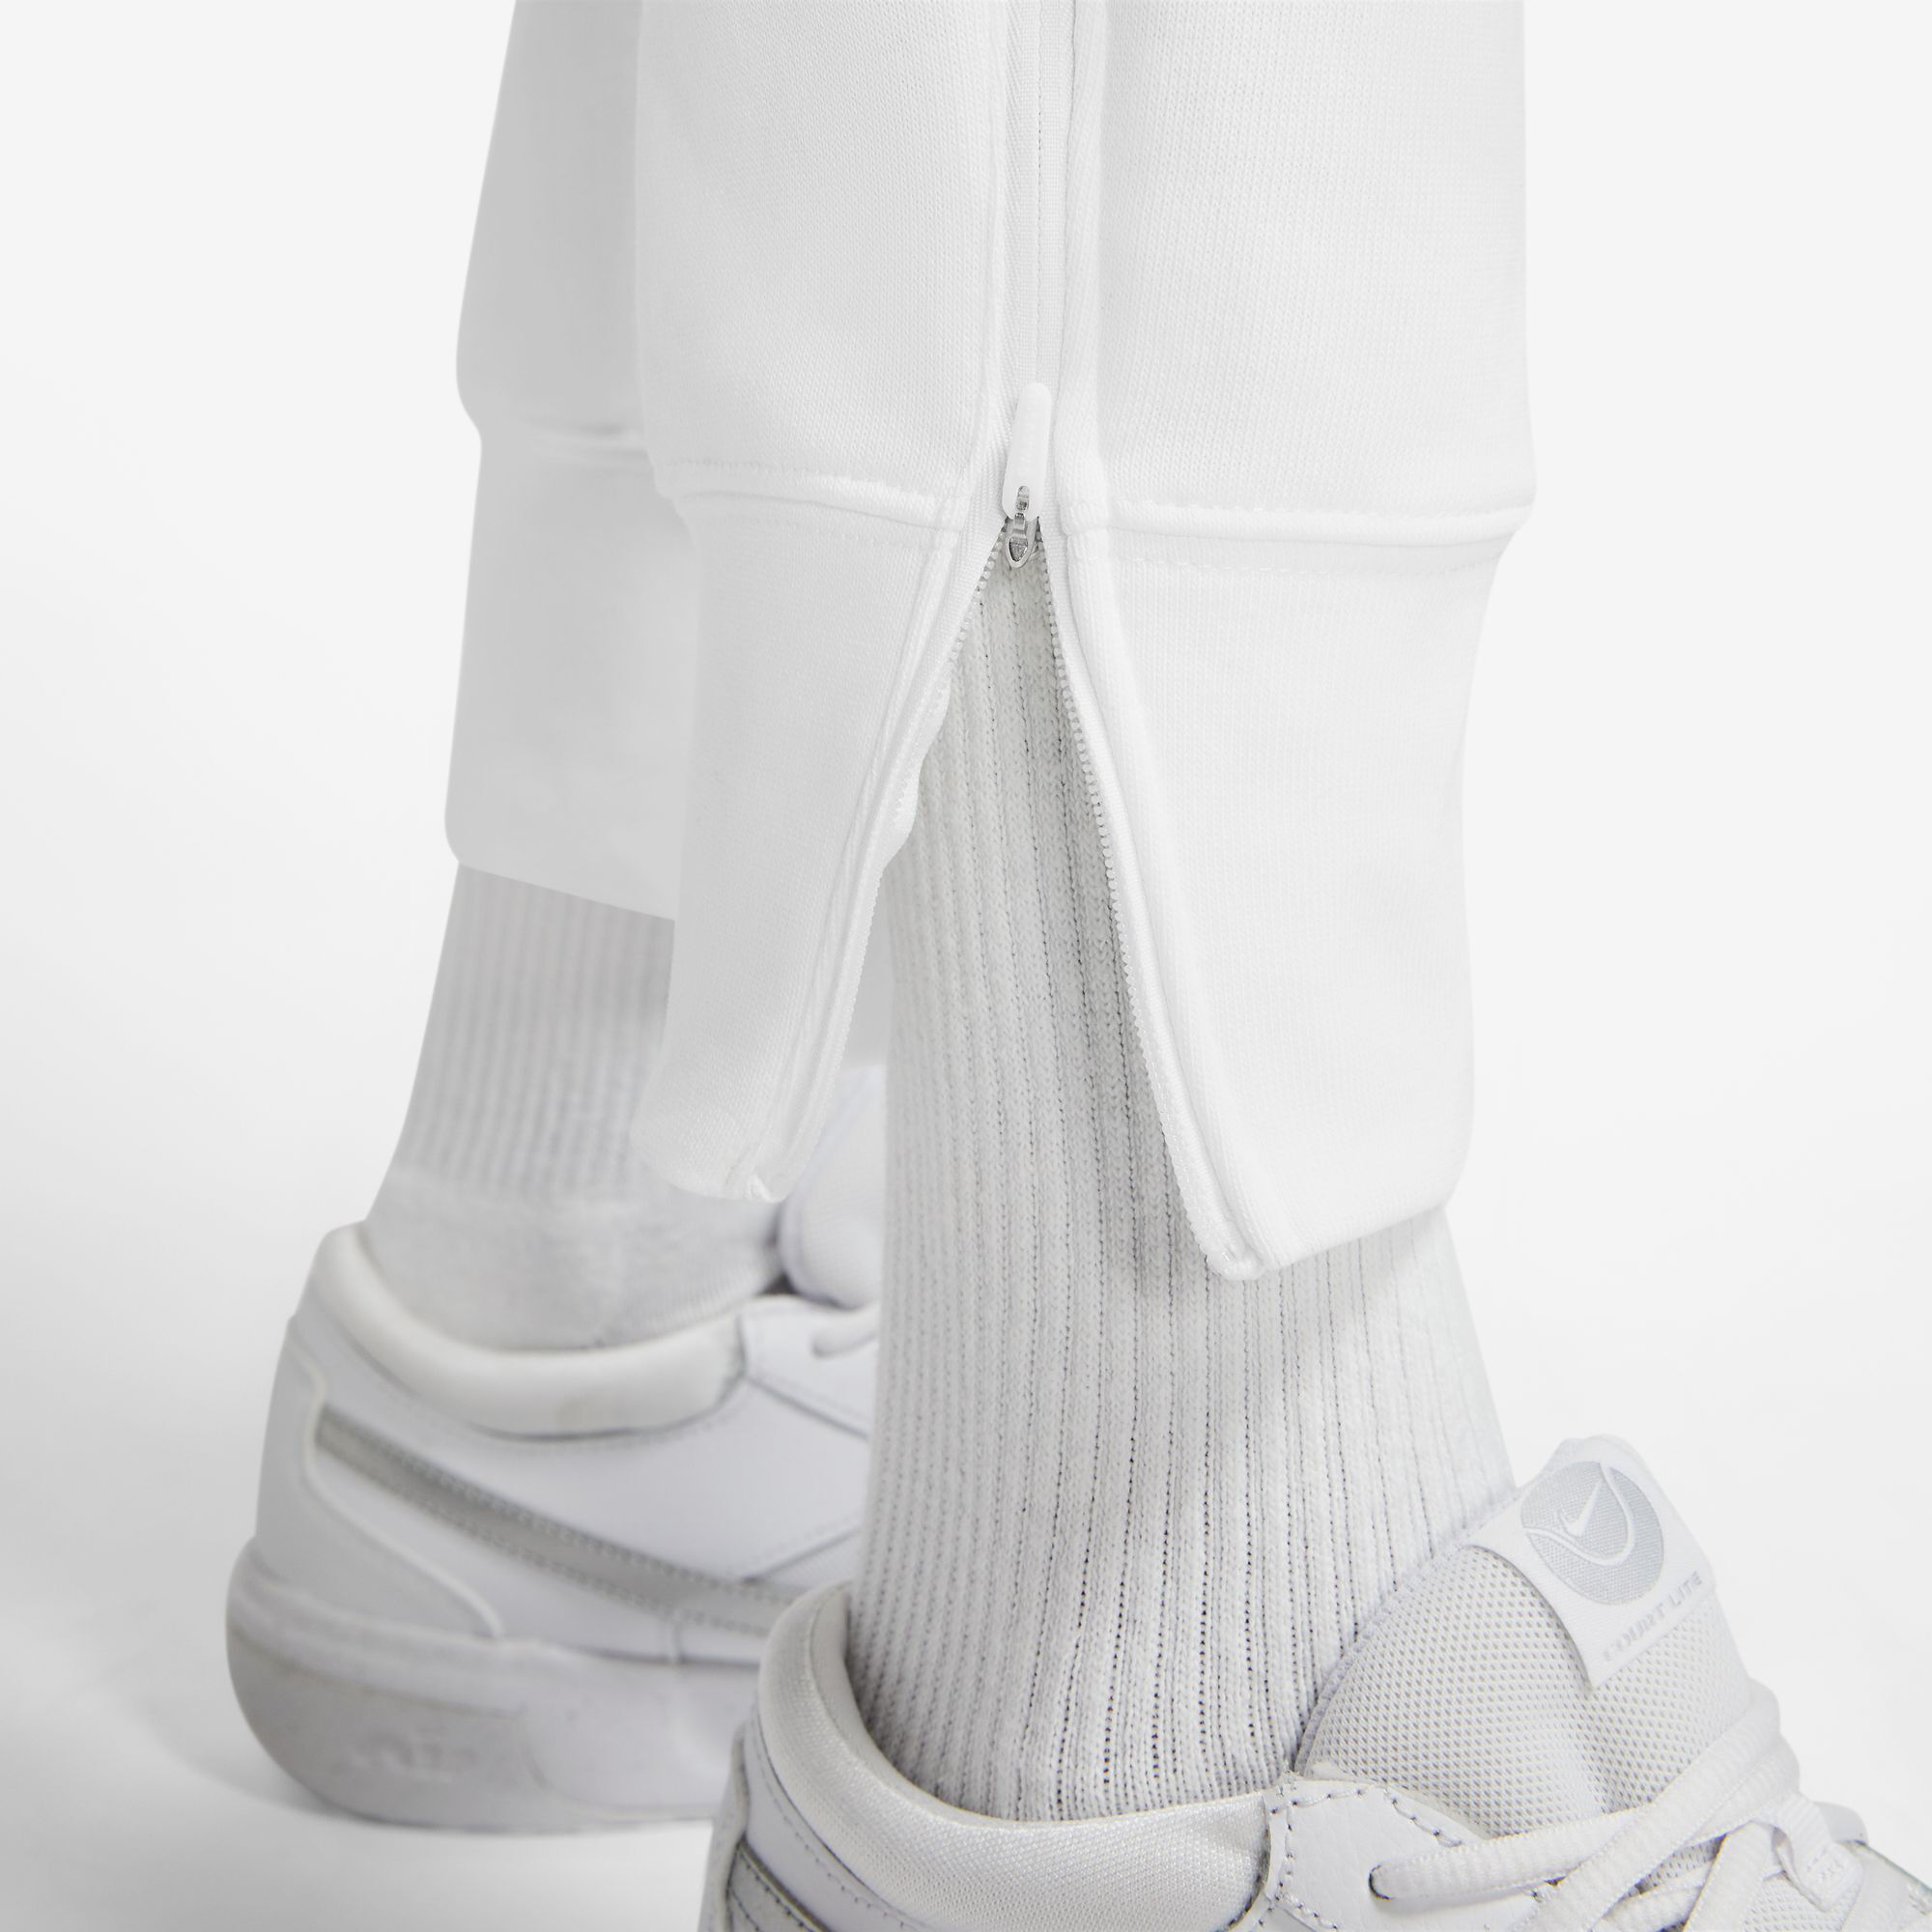 Nike Womens Modern Rise TECH CROP Pant DRI FIT GOLF PANTS 509743 100 SZ 12  WHITE